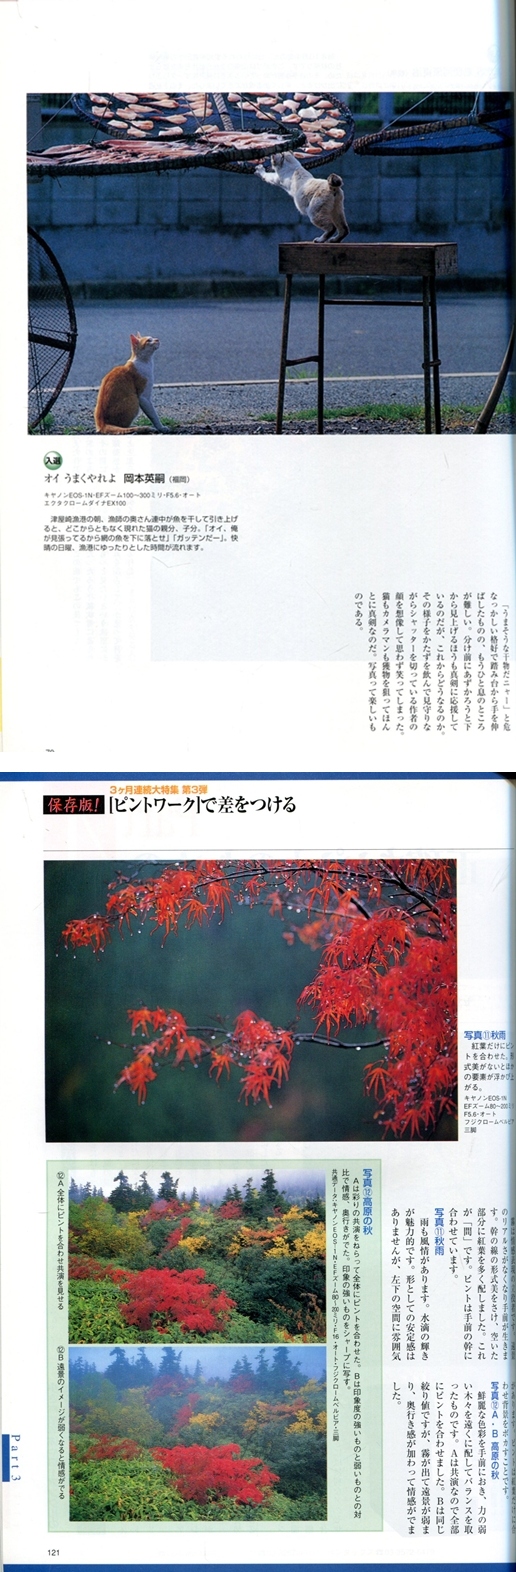 Photo Contest(월간) : 日本フォトコンテスト2000.09 フォトコン 2000年 9月號